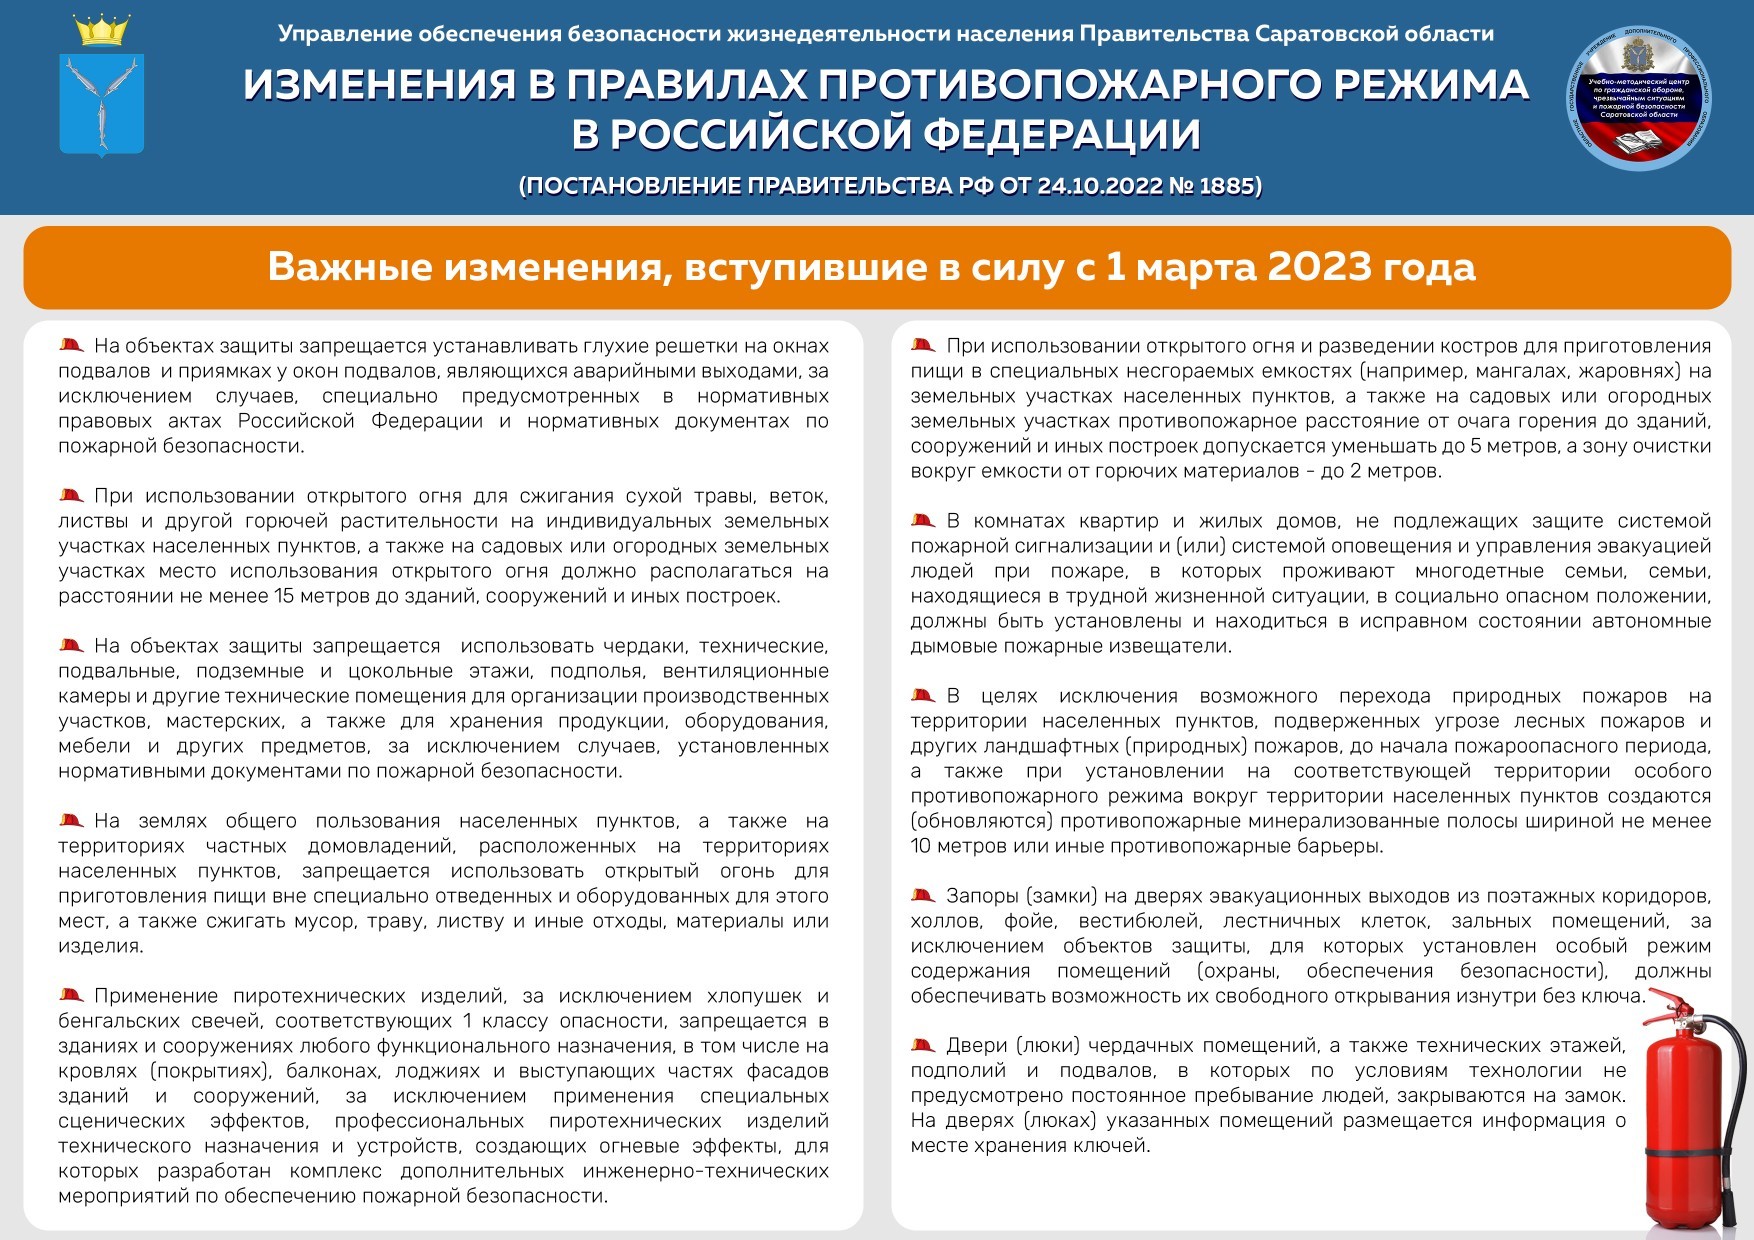 В правила противопожарного режима в Российской Федерации внесены изменения.